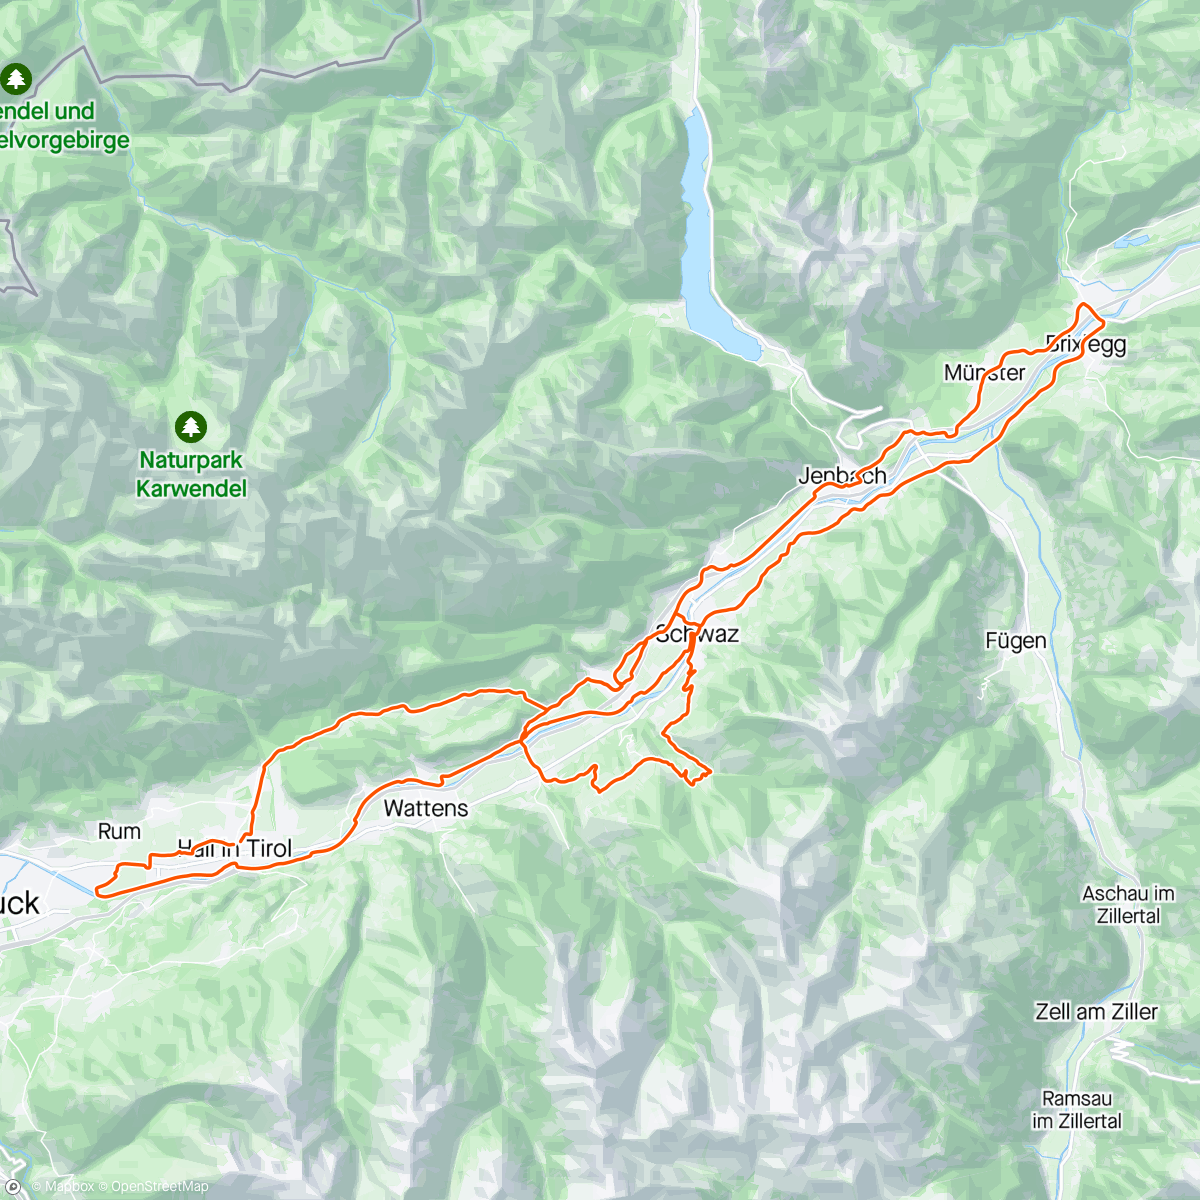 「Gruppenfahrt」活動的地圖